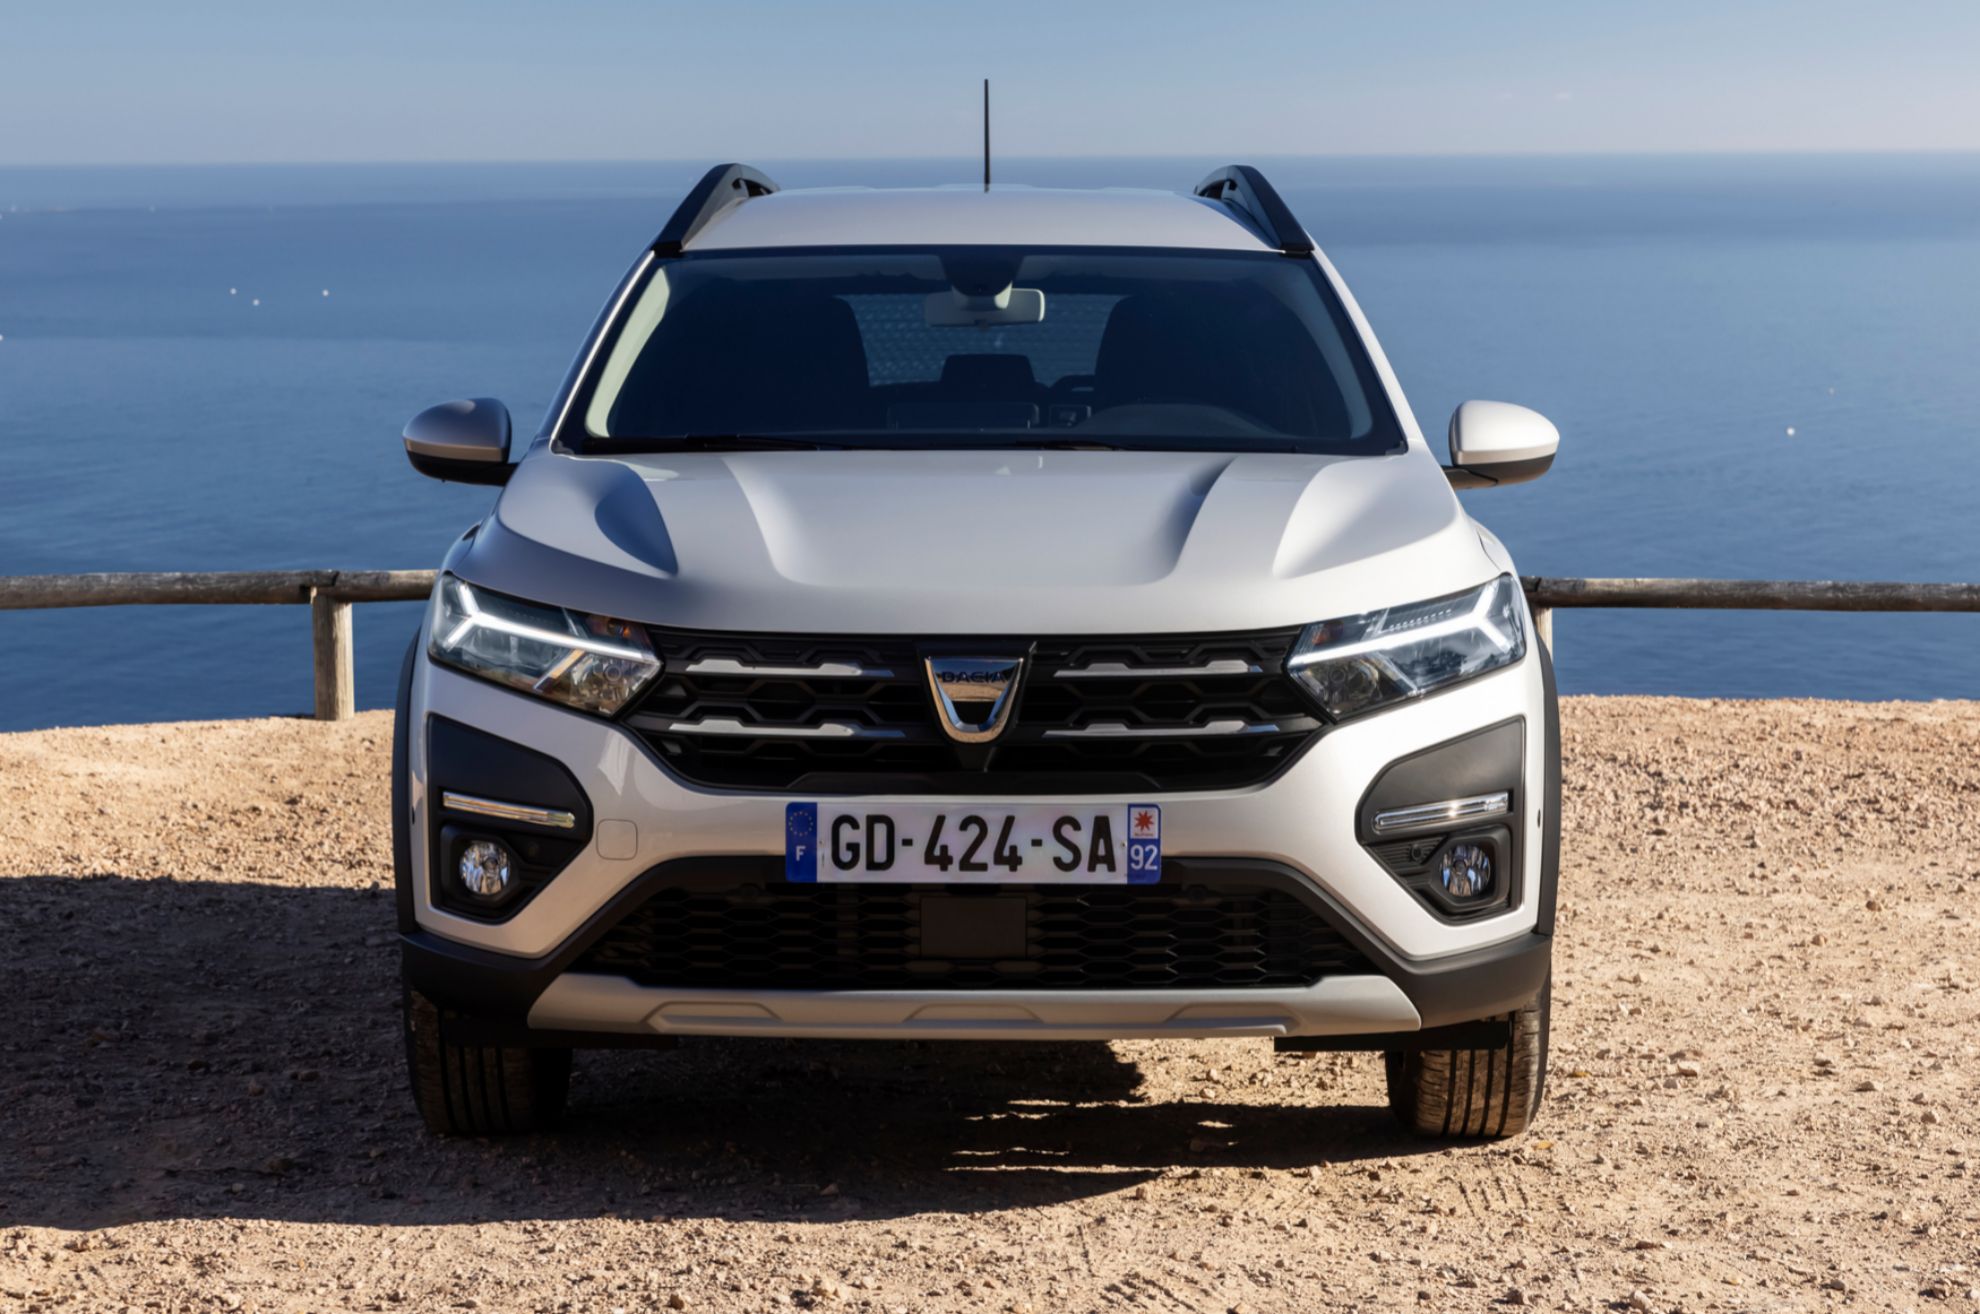 Dacia Jogger - siete plazas - low cost - barato - novedad - al volante - primera prueba